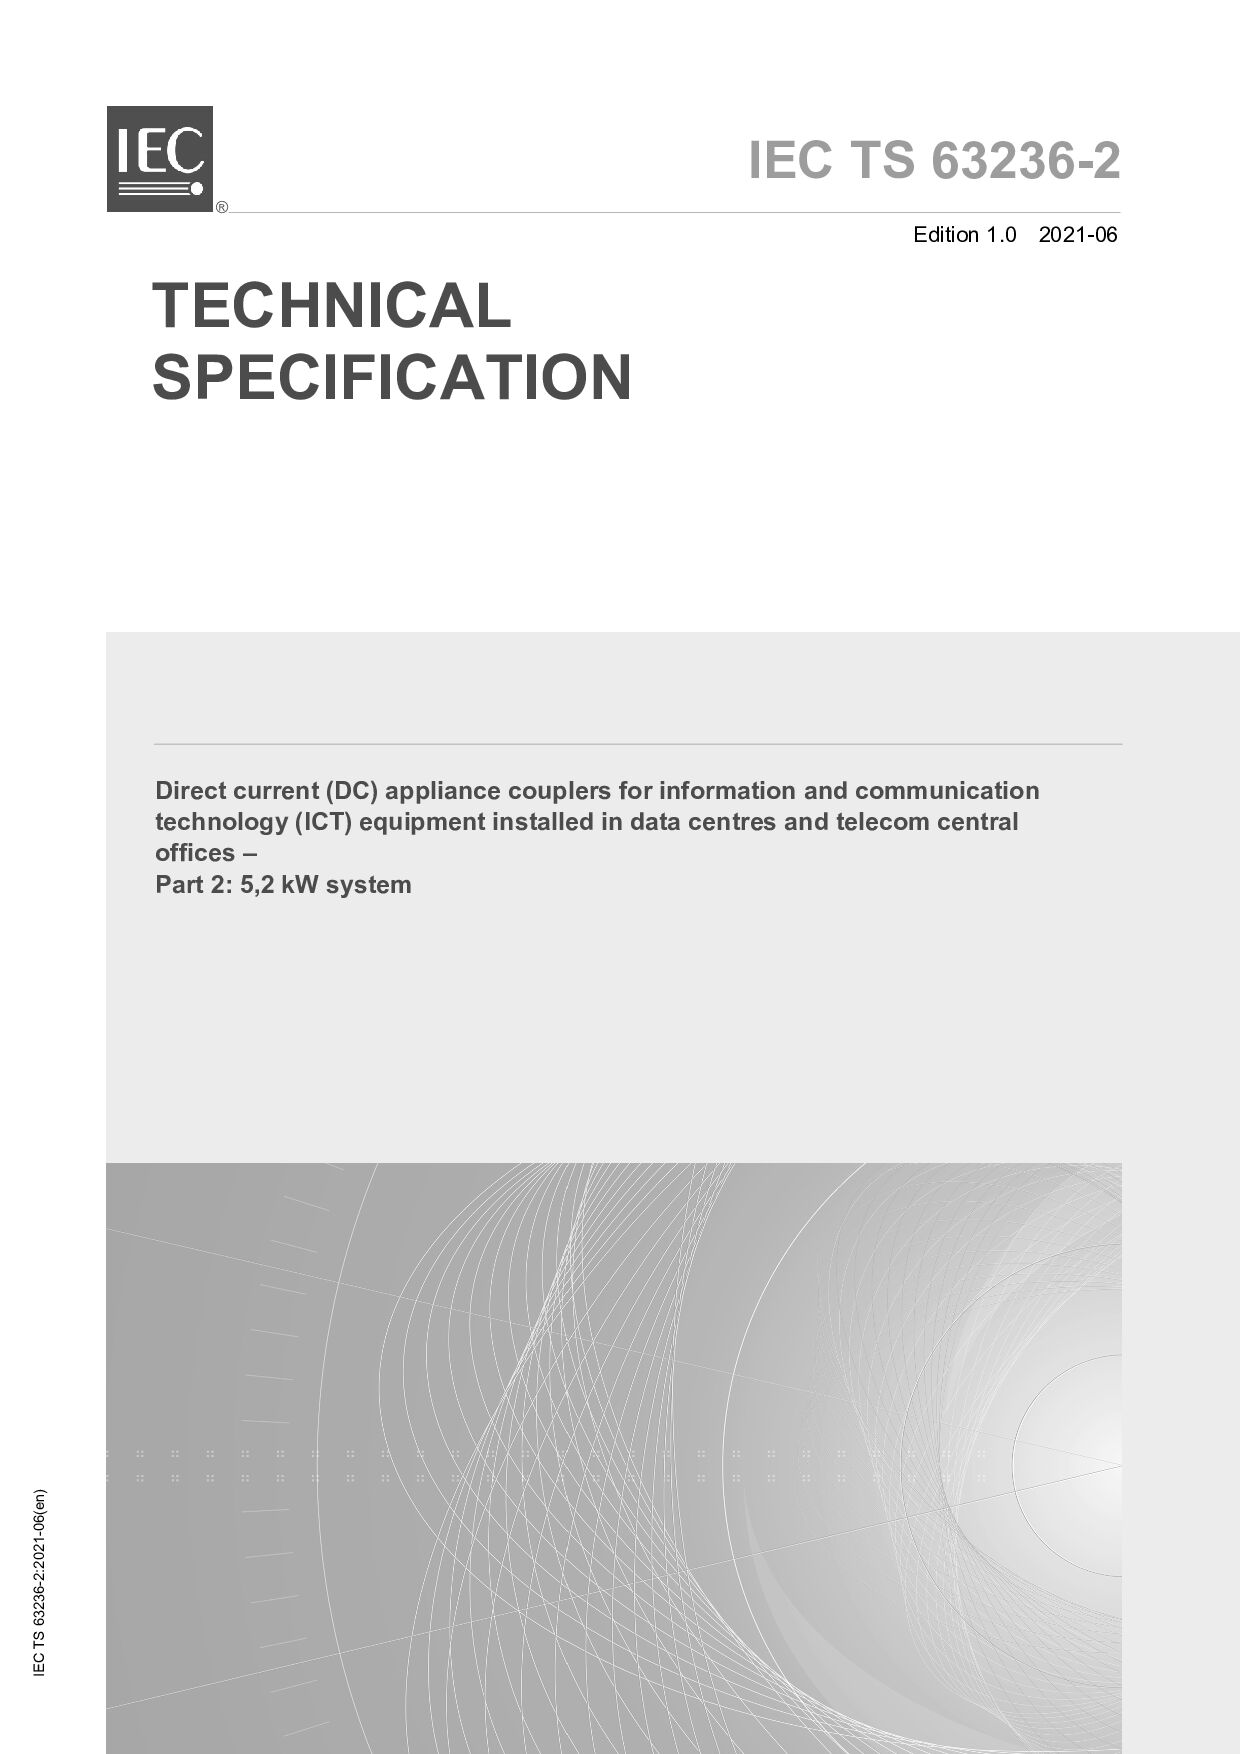 IEC TS 63236-2:2021